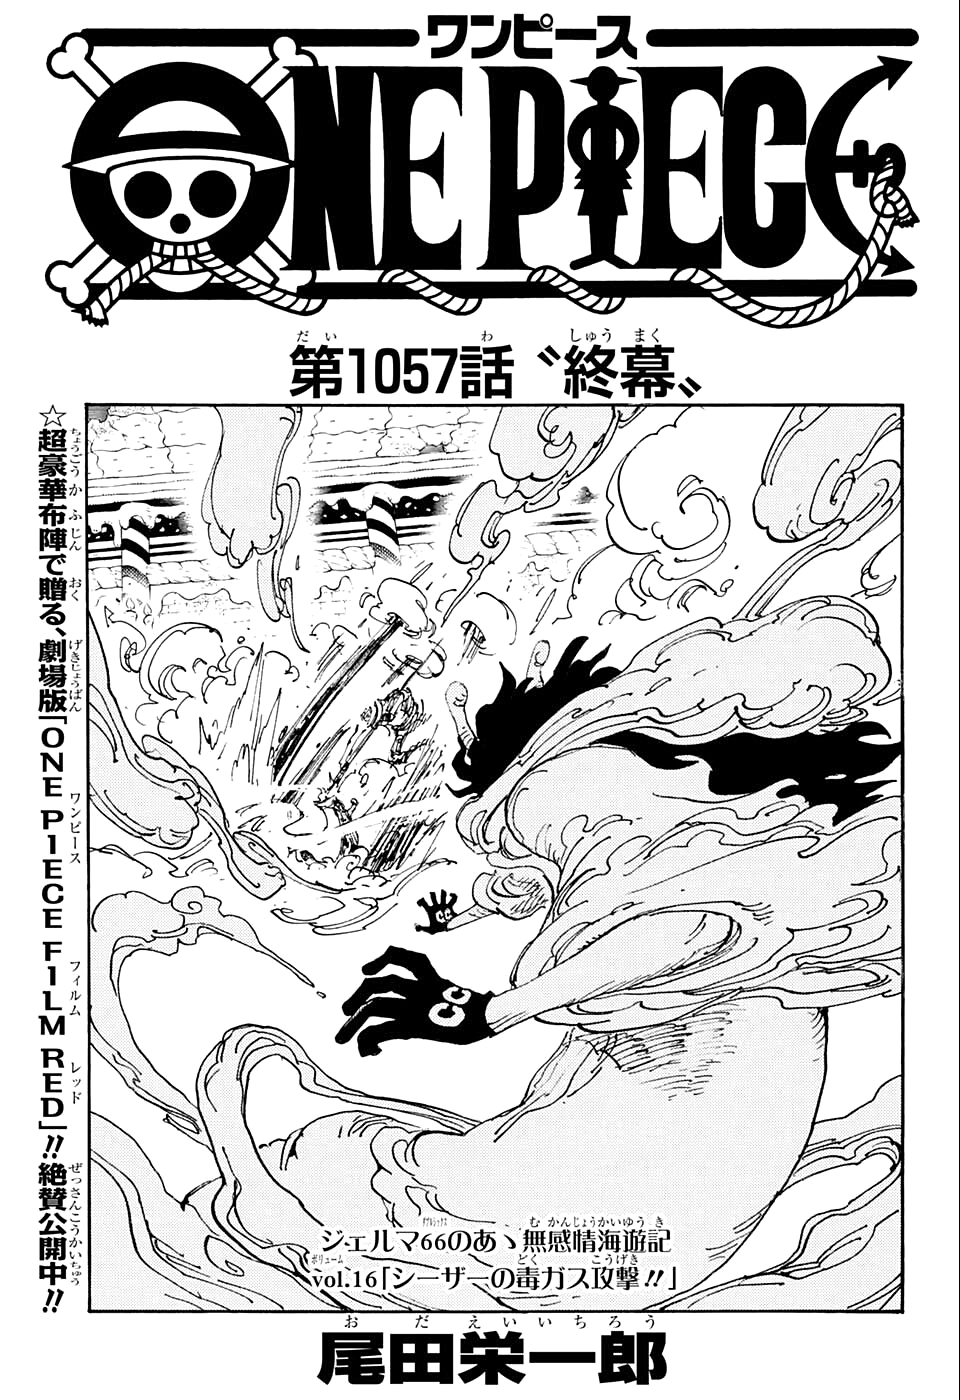 Adiós a Wano! One Piece capítulo 1057 ya disponible; cómo leer gratis en  español - Meristation